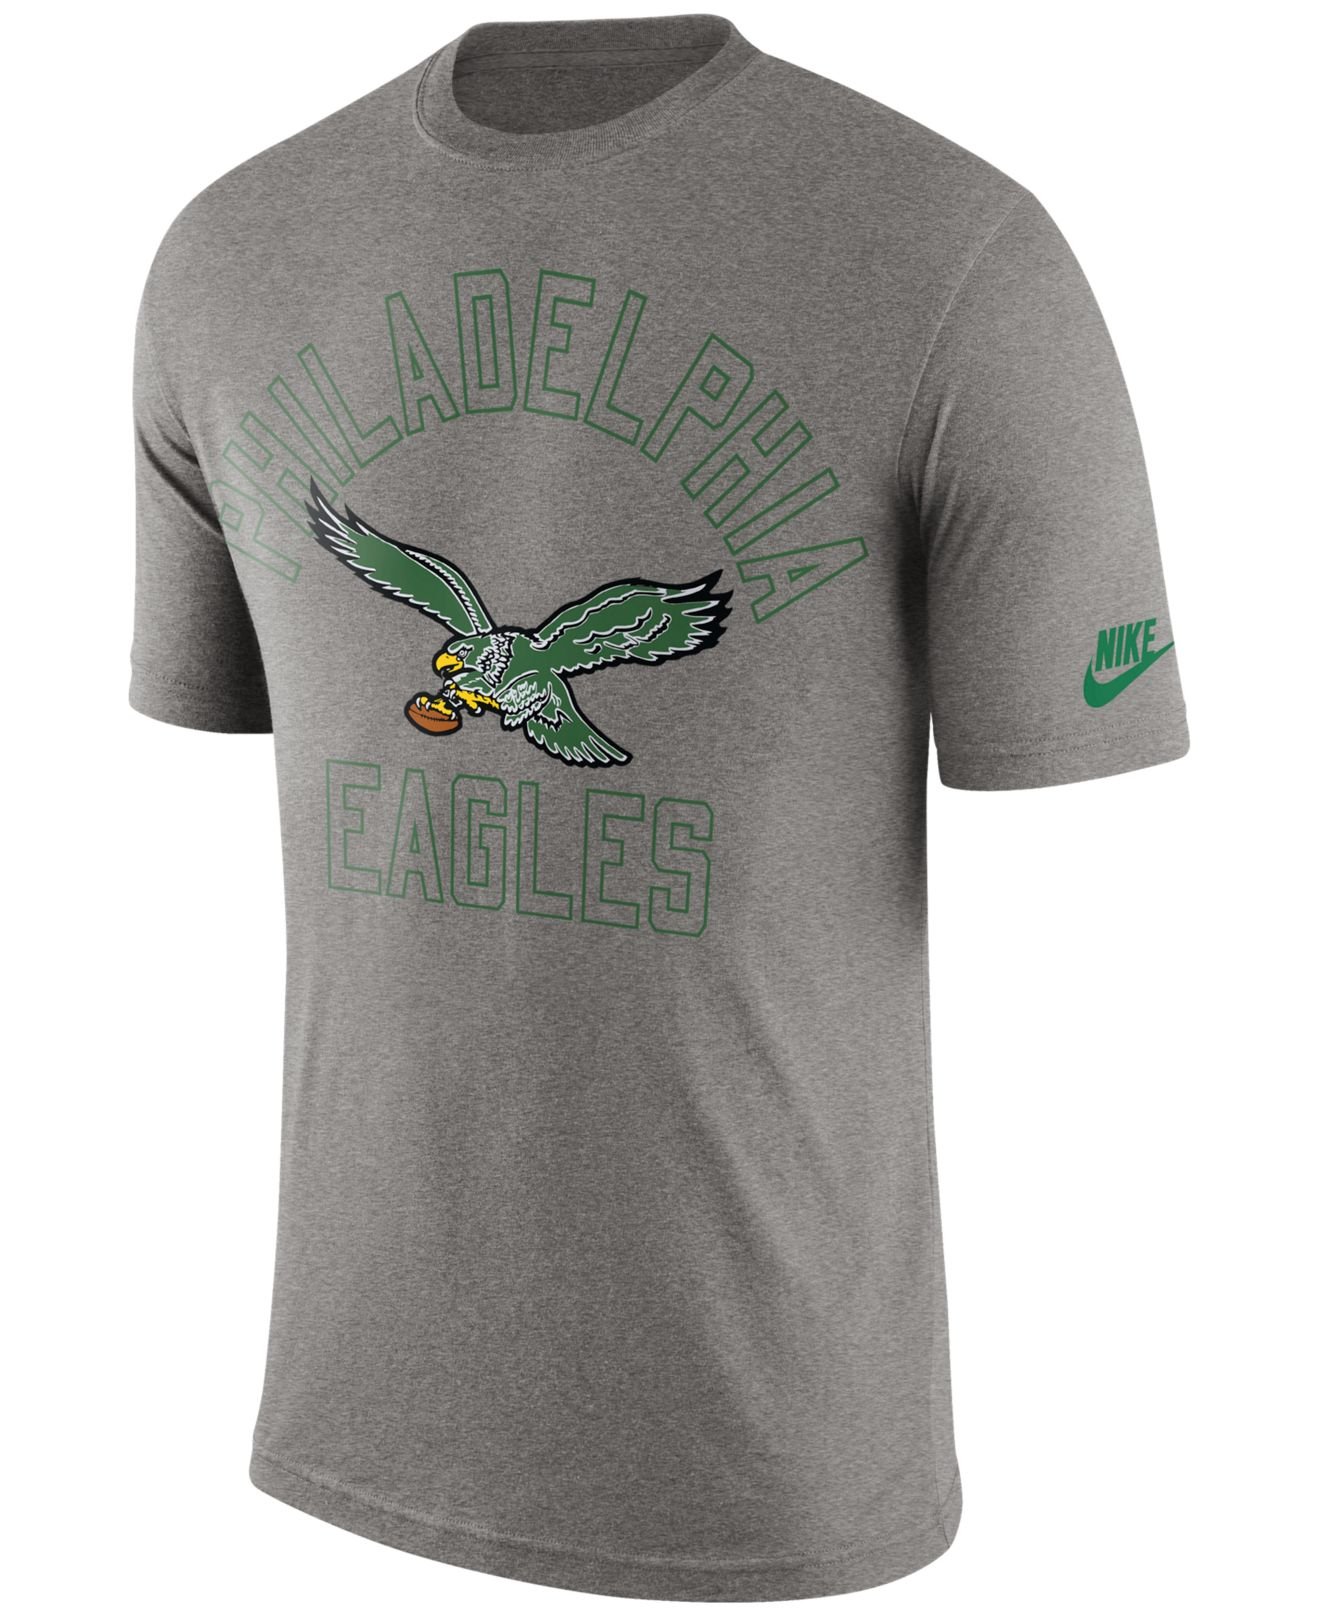 Lyst - Nike Men's Philadelphia Eagles Retro Logo T-shirt in Gray for Men